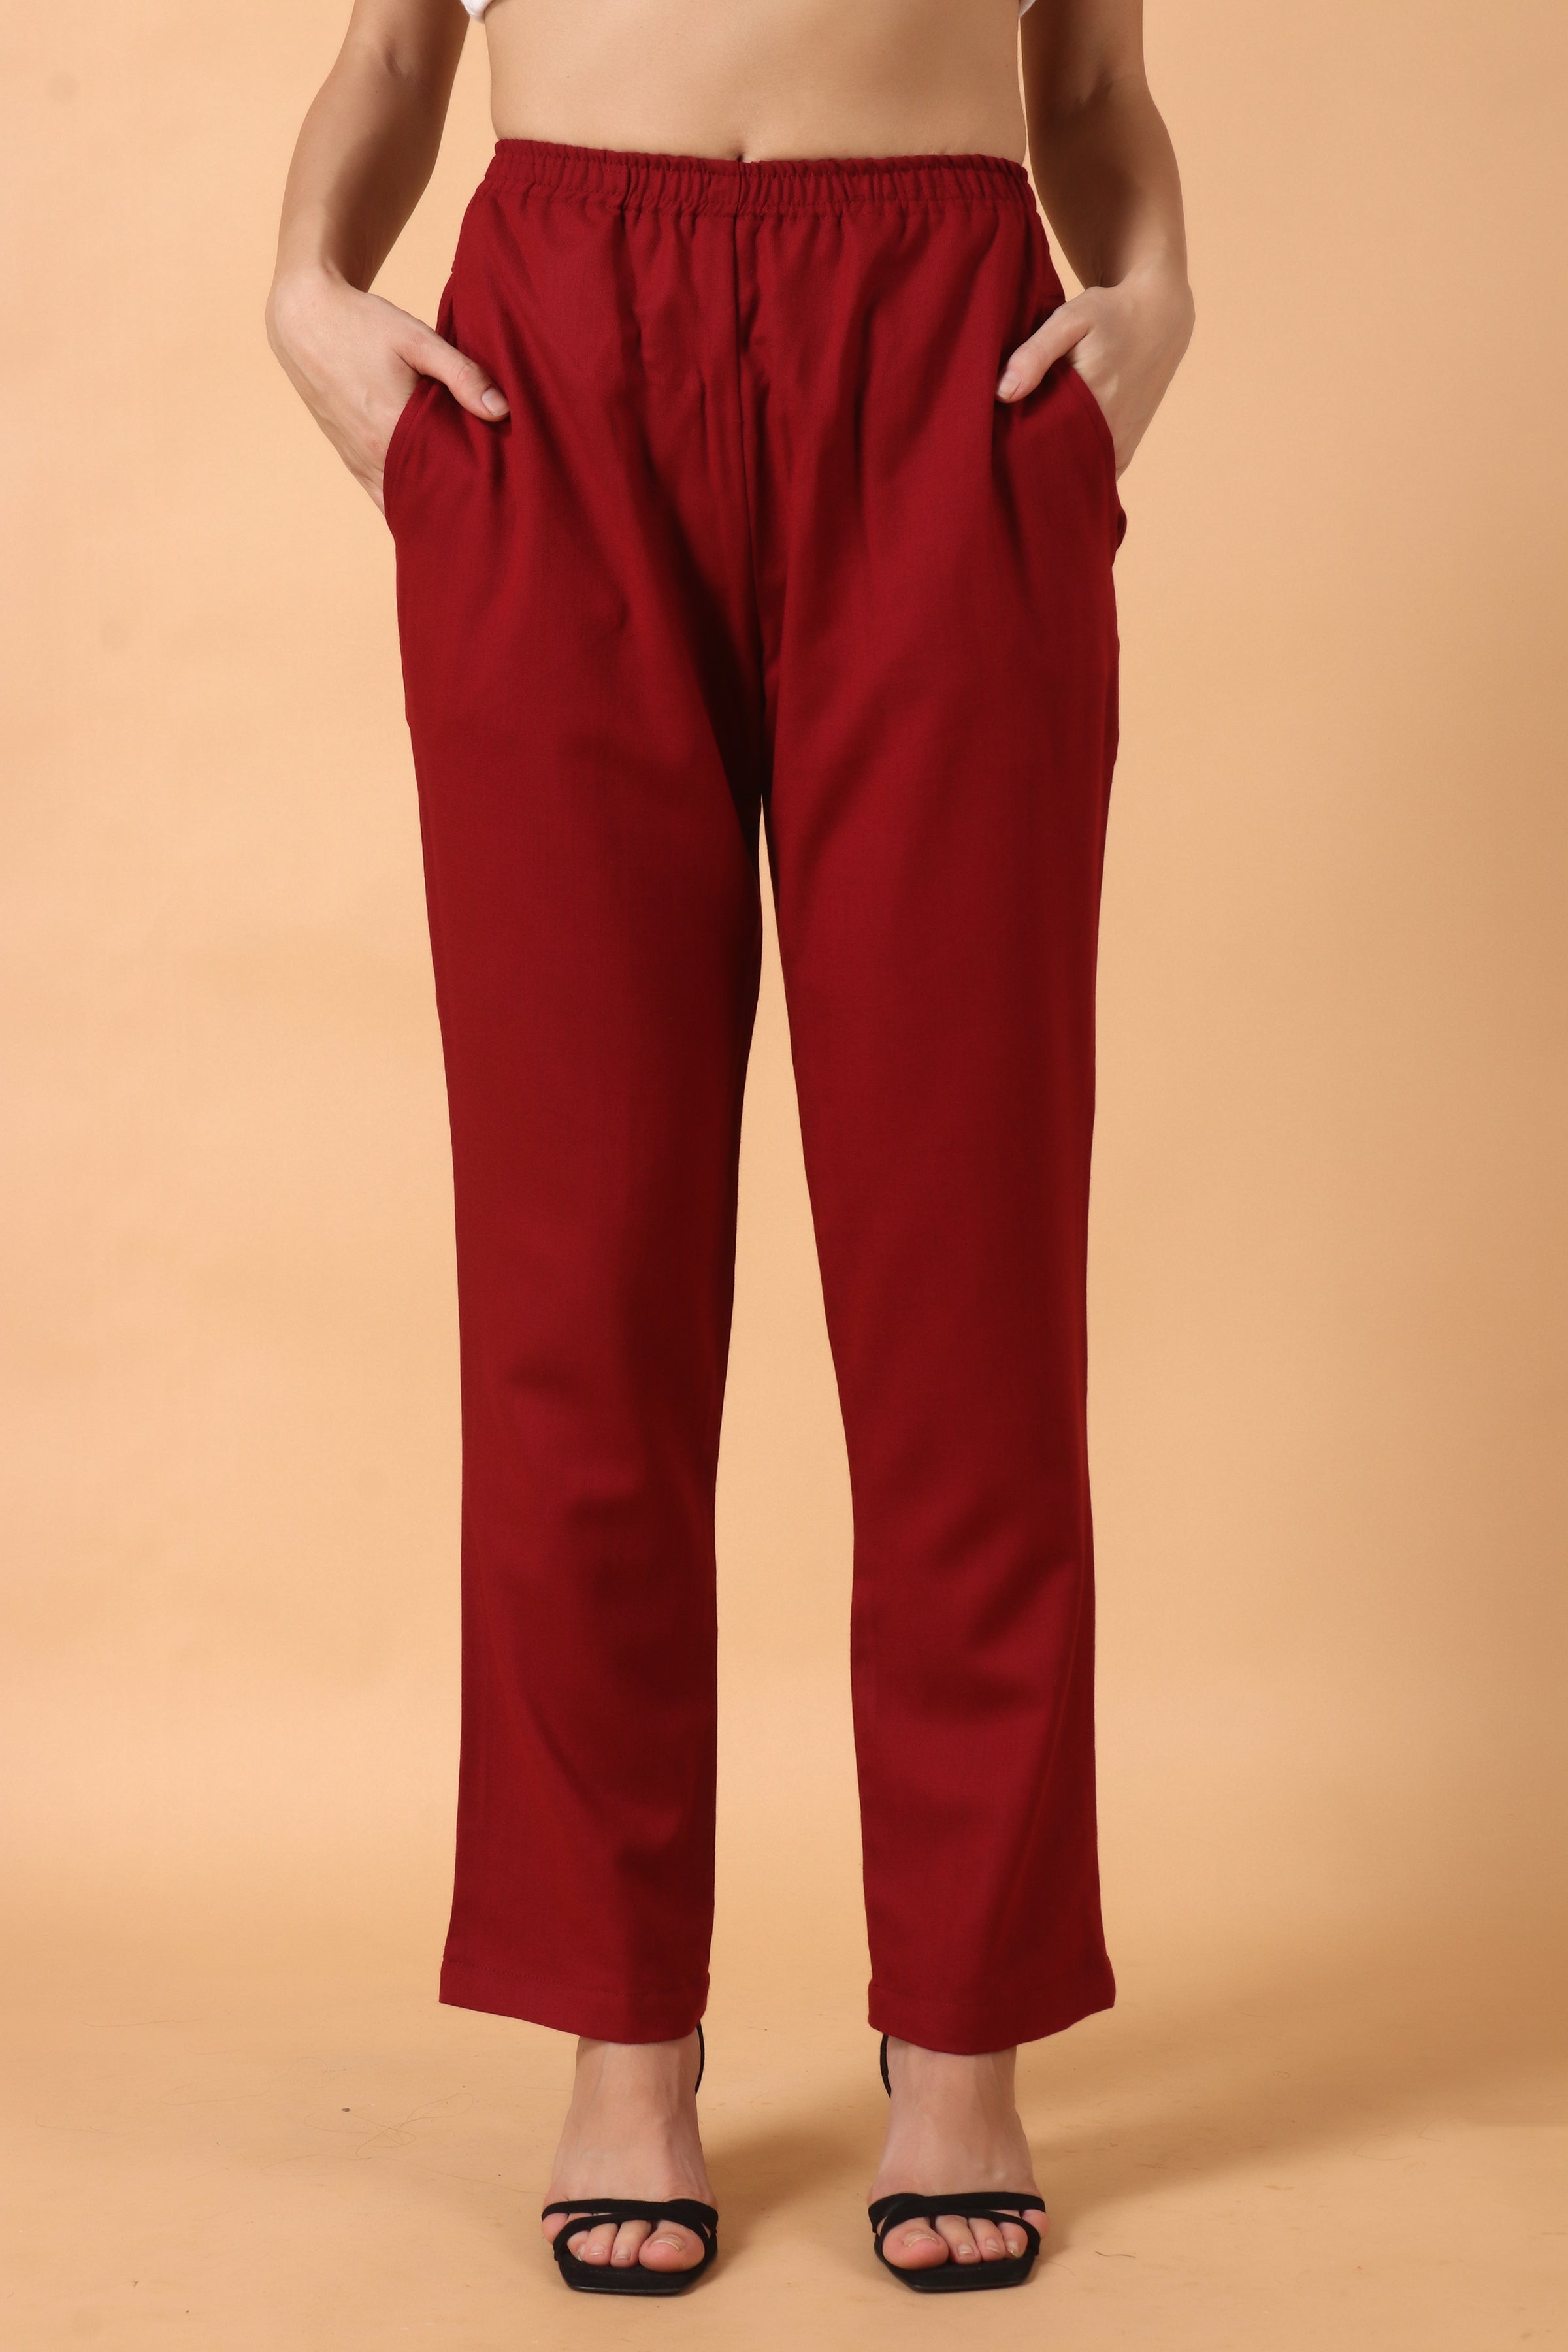 Women Stylish Maroon Woolen Trousers/Pants